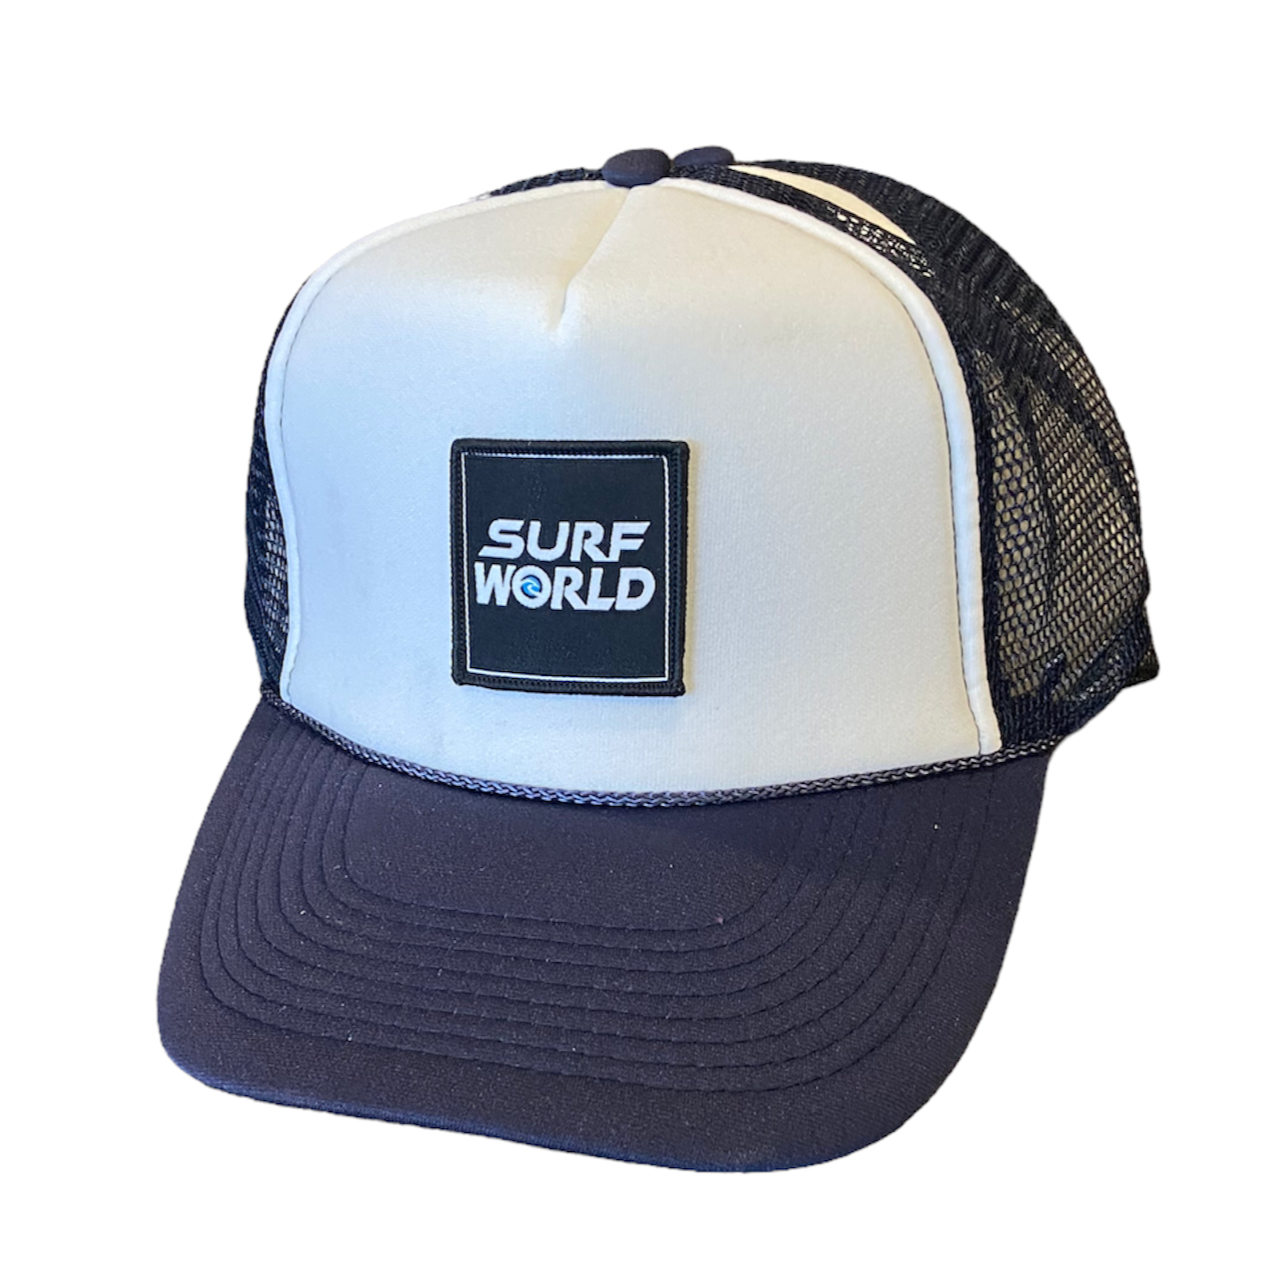 Surf World Foam Front Trucker Hat - White Navy – SURF WORLD SURF SHOP